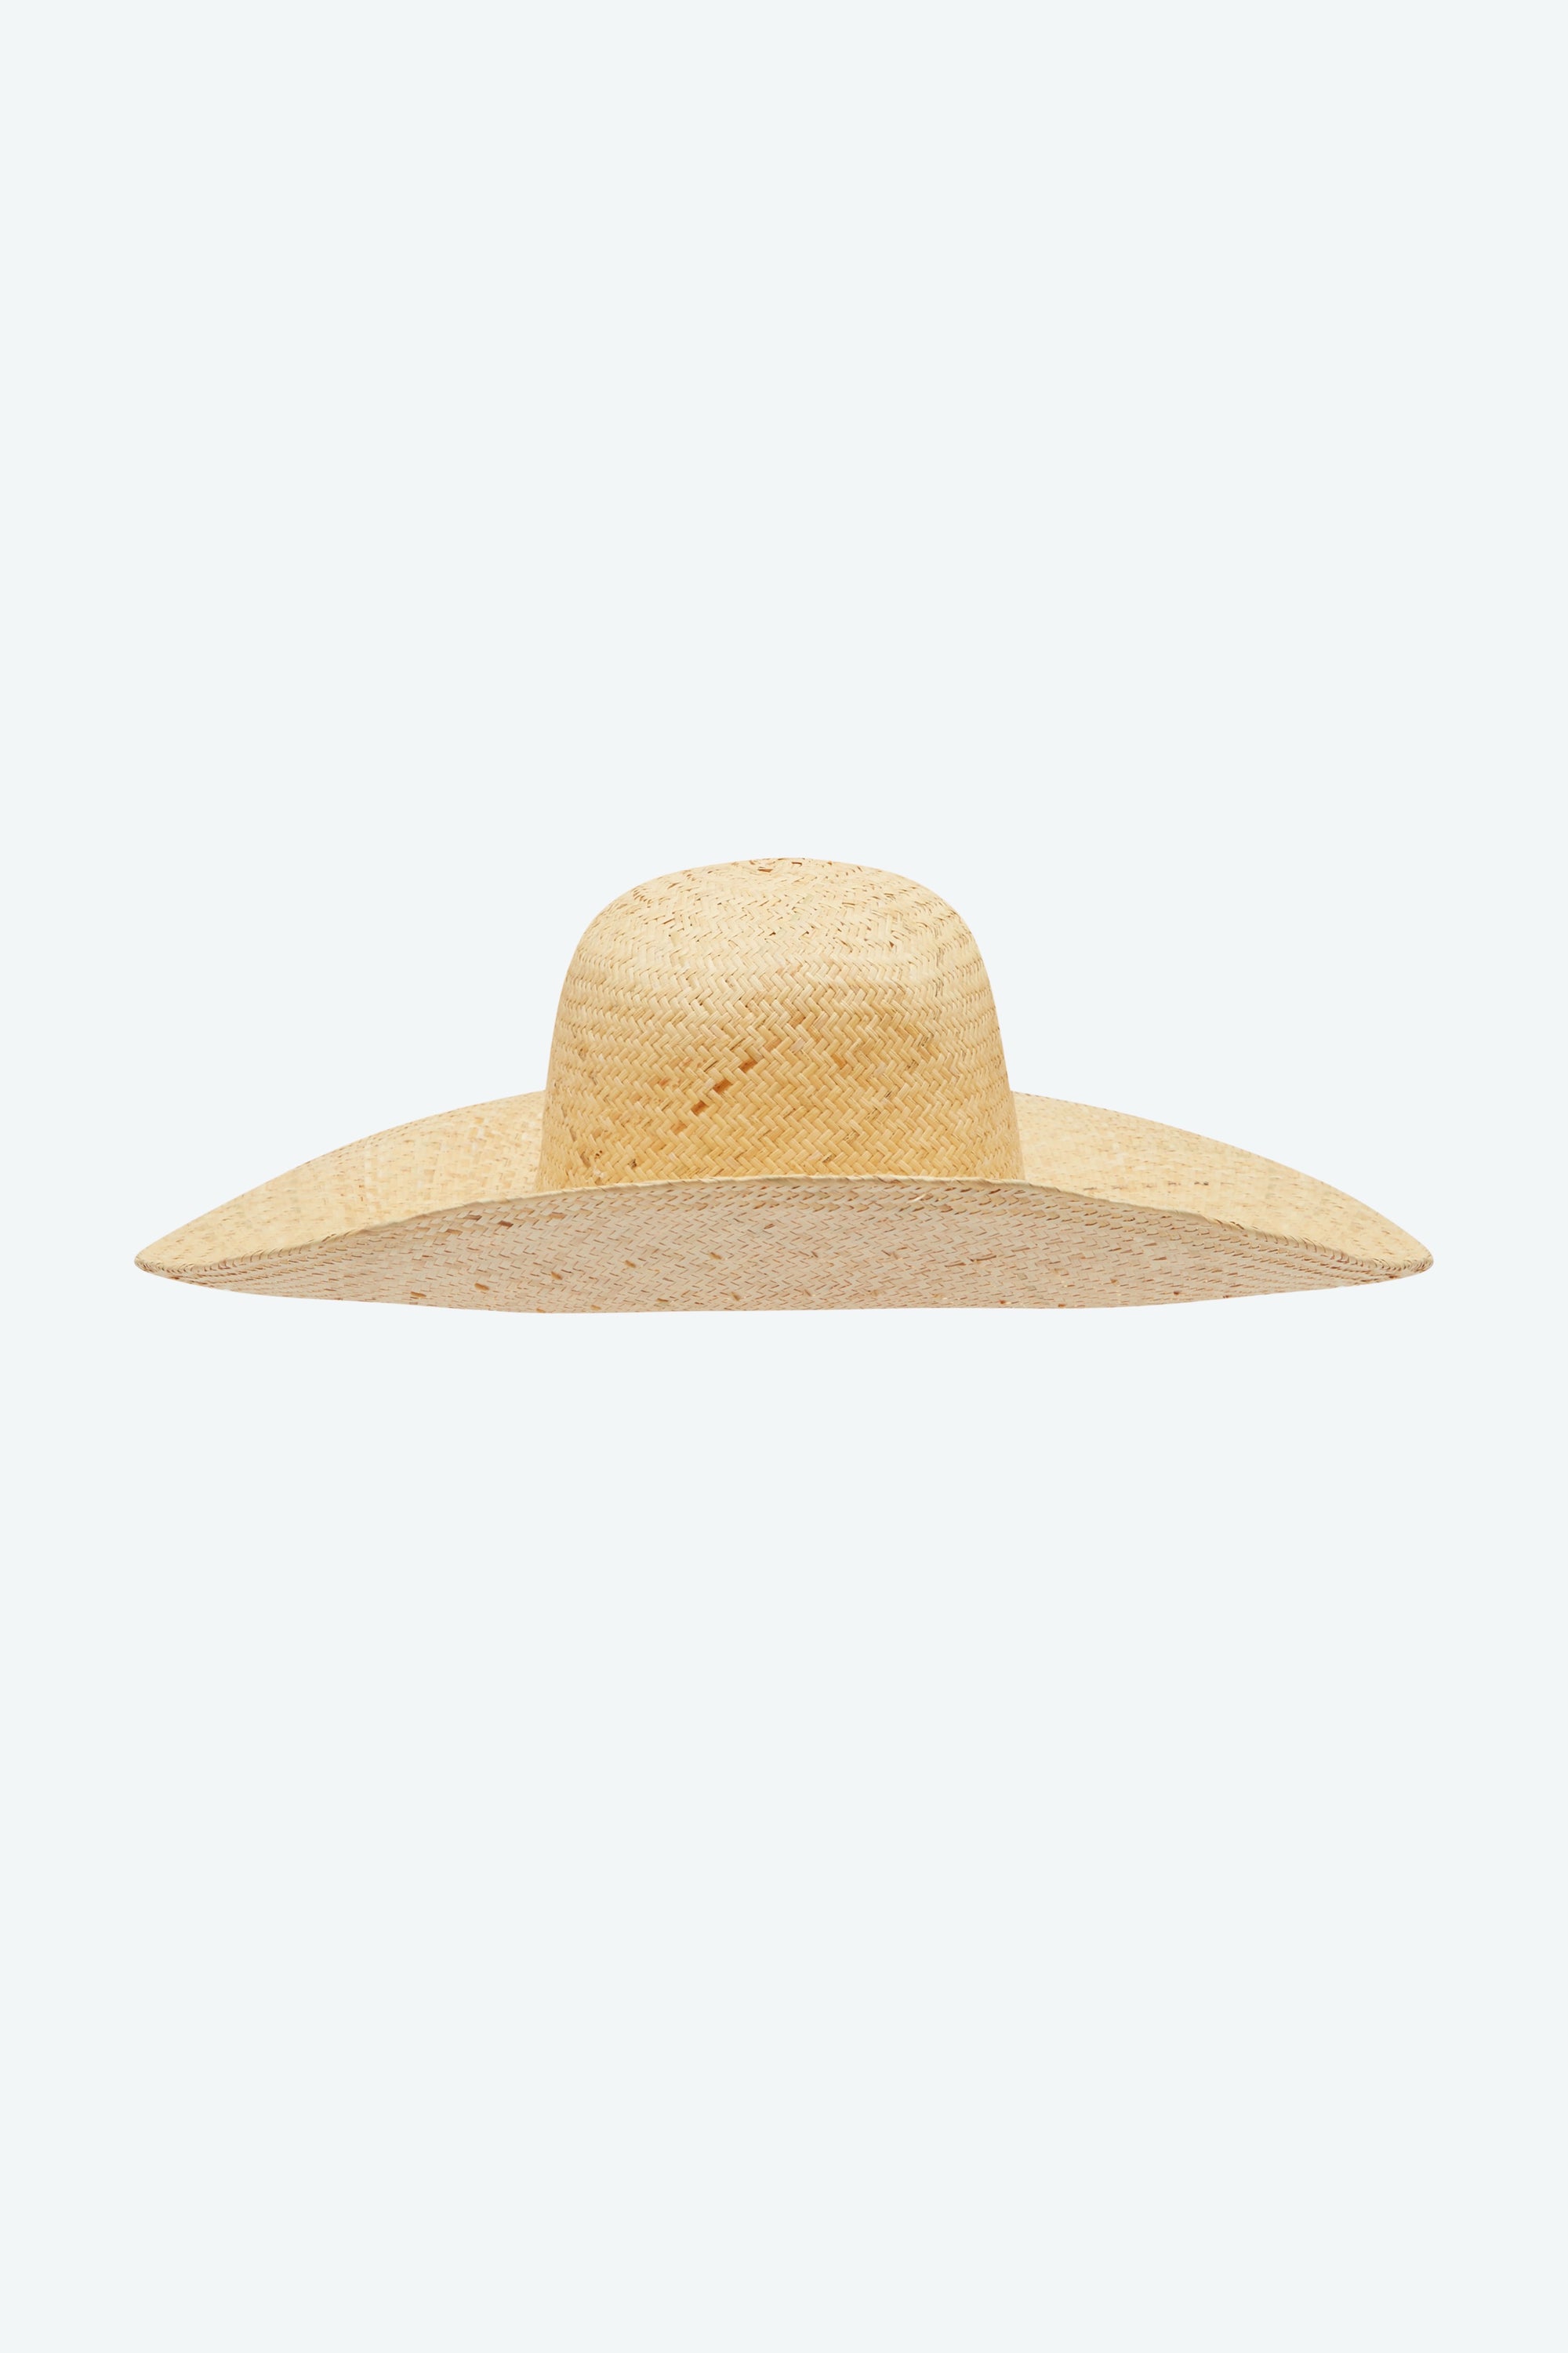 The Garden Hat